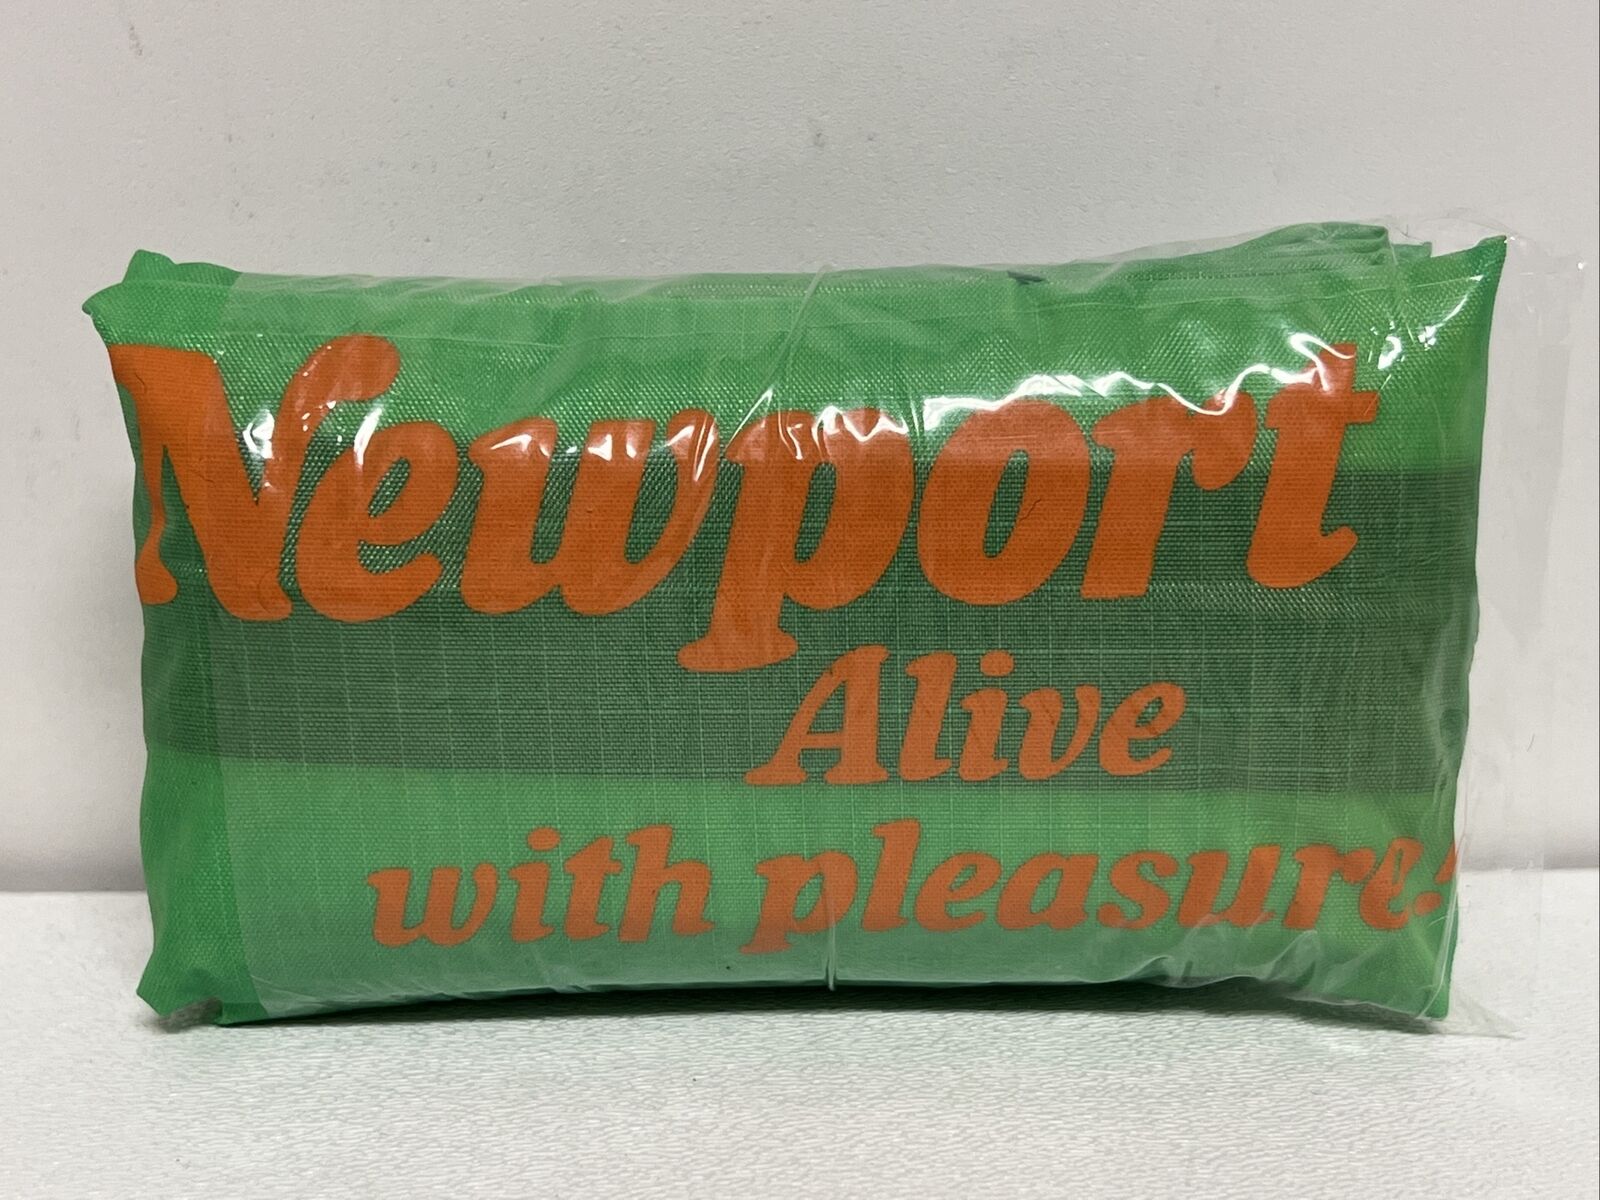 VTG Newport Cigarette Alive With Pleasure Duffle Bag Green Brand New Promo